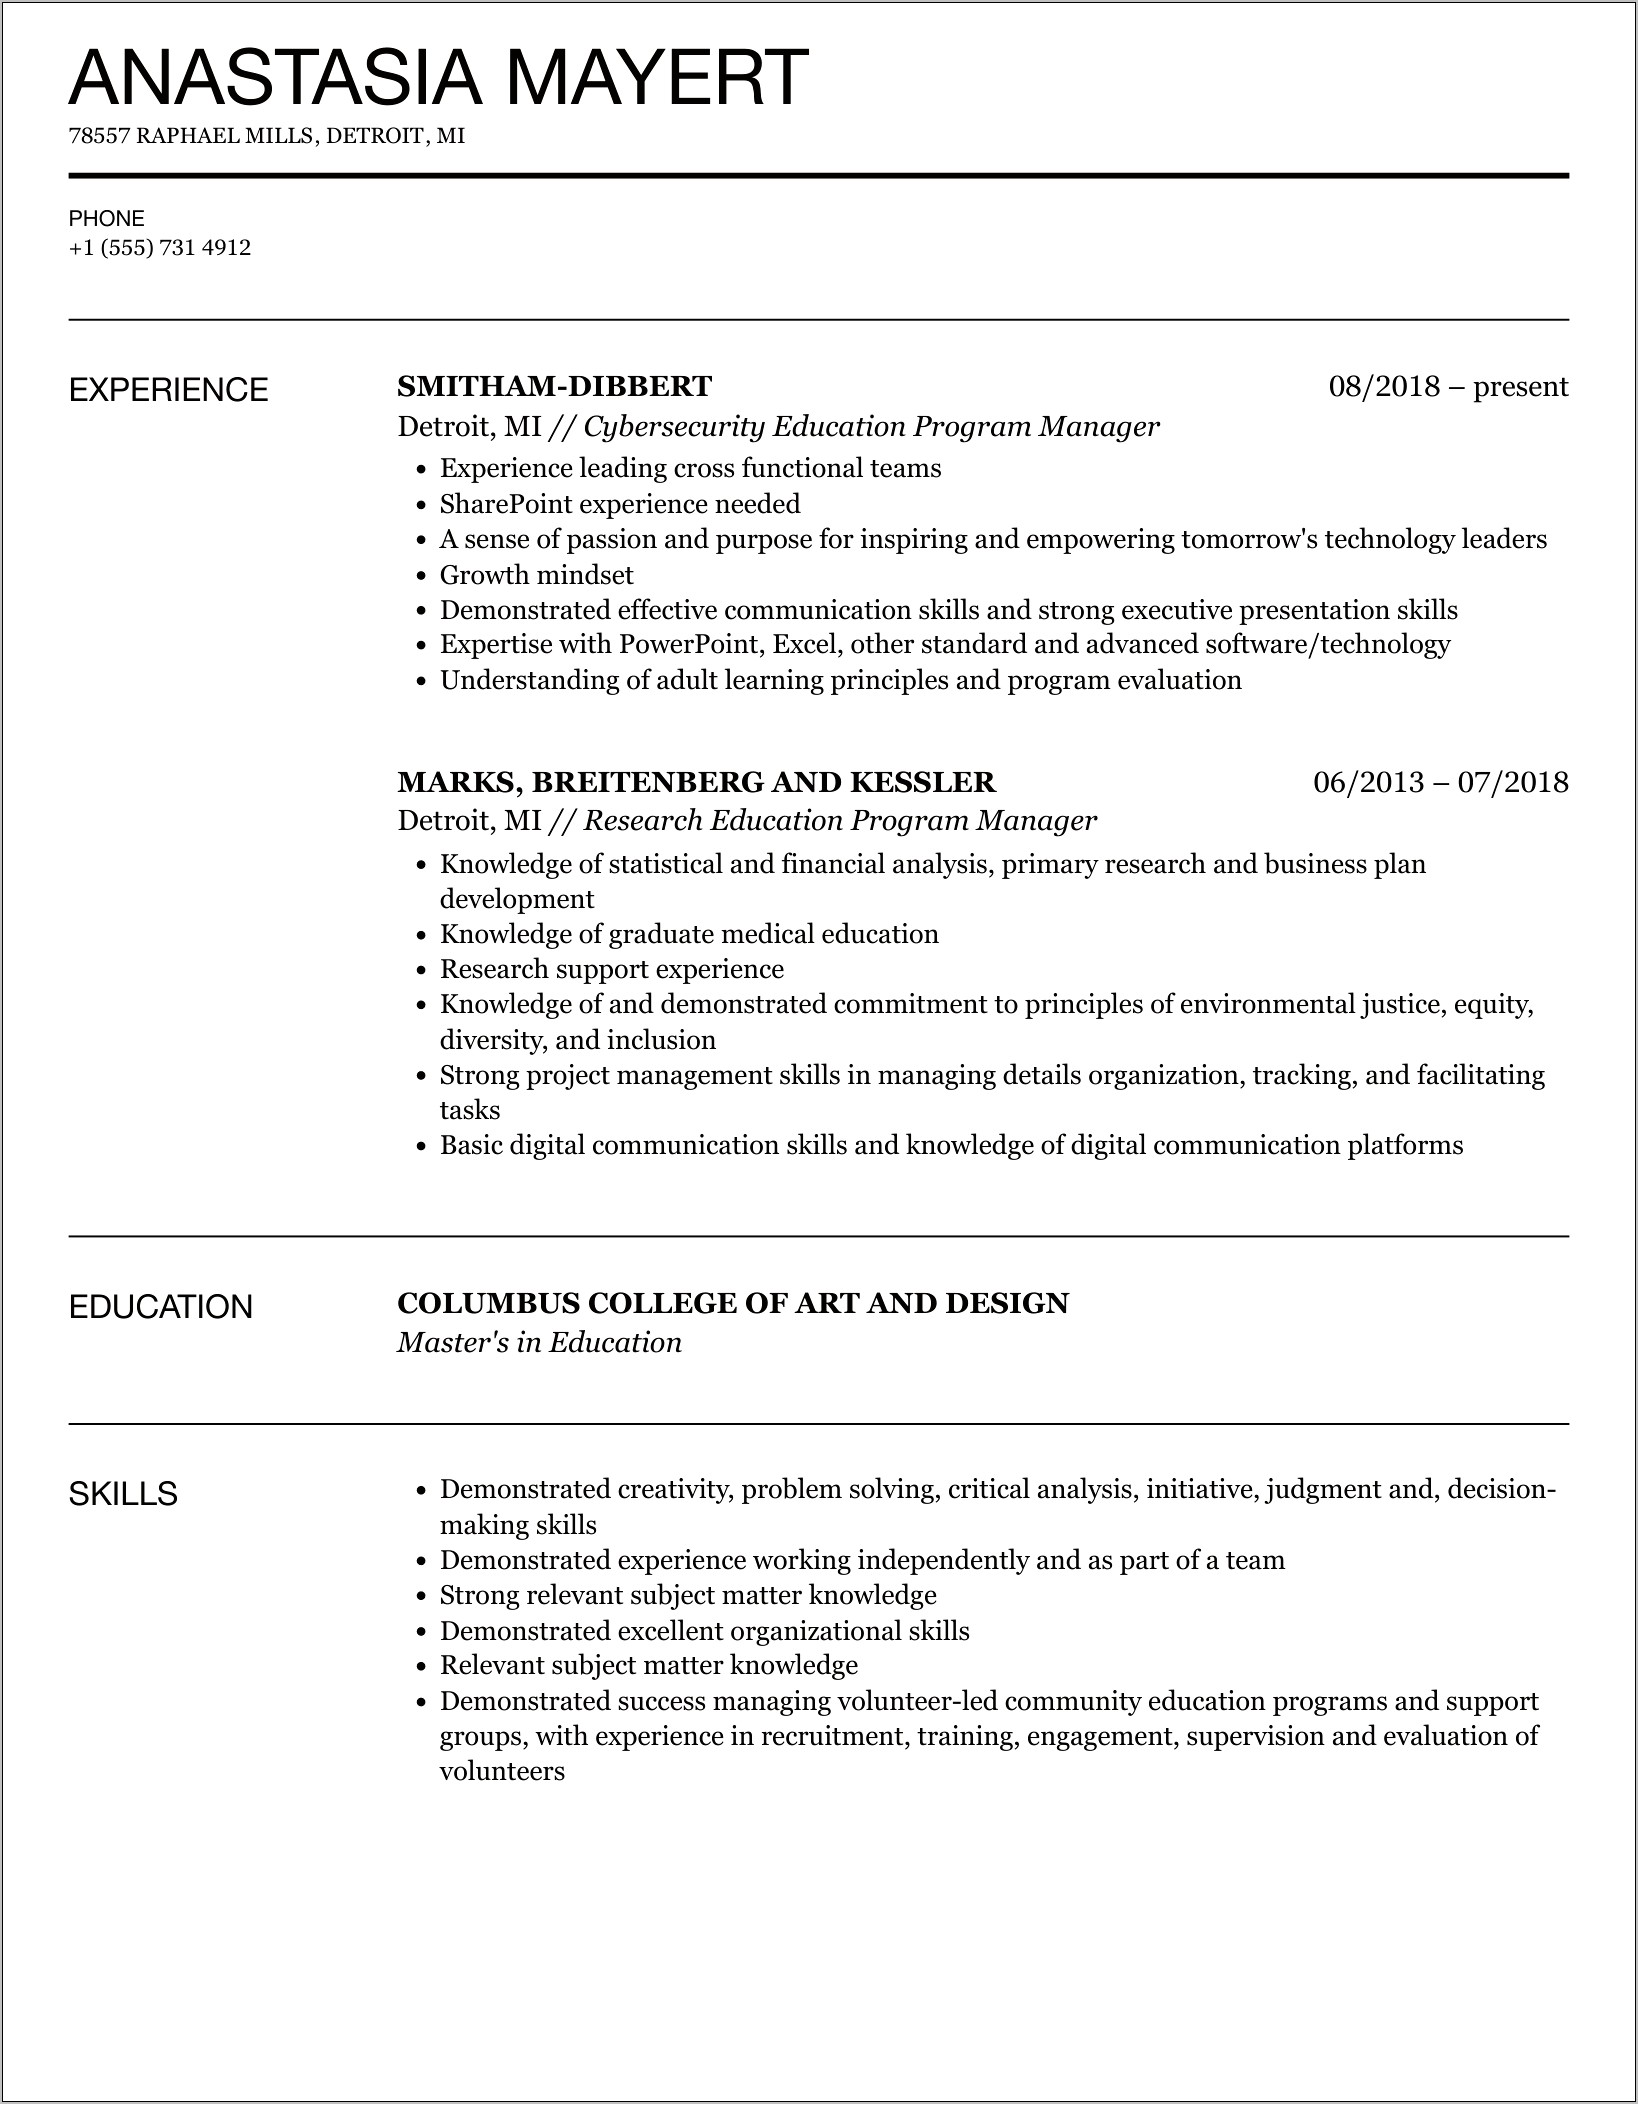 Example Resume For Scope Program